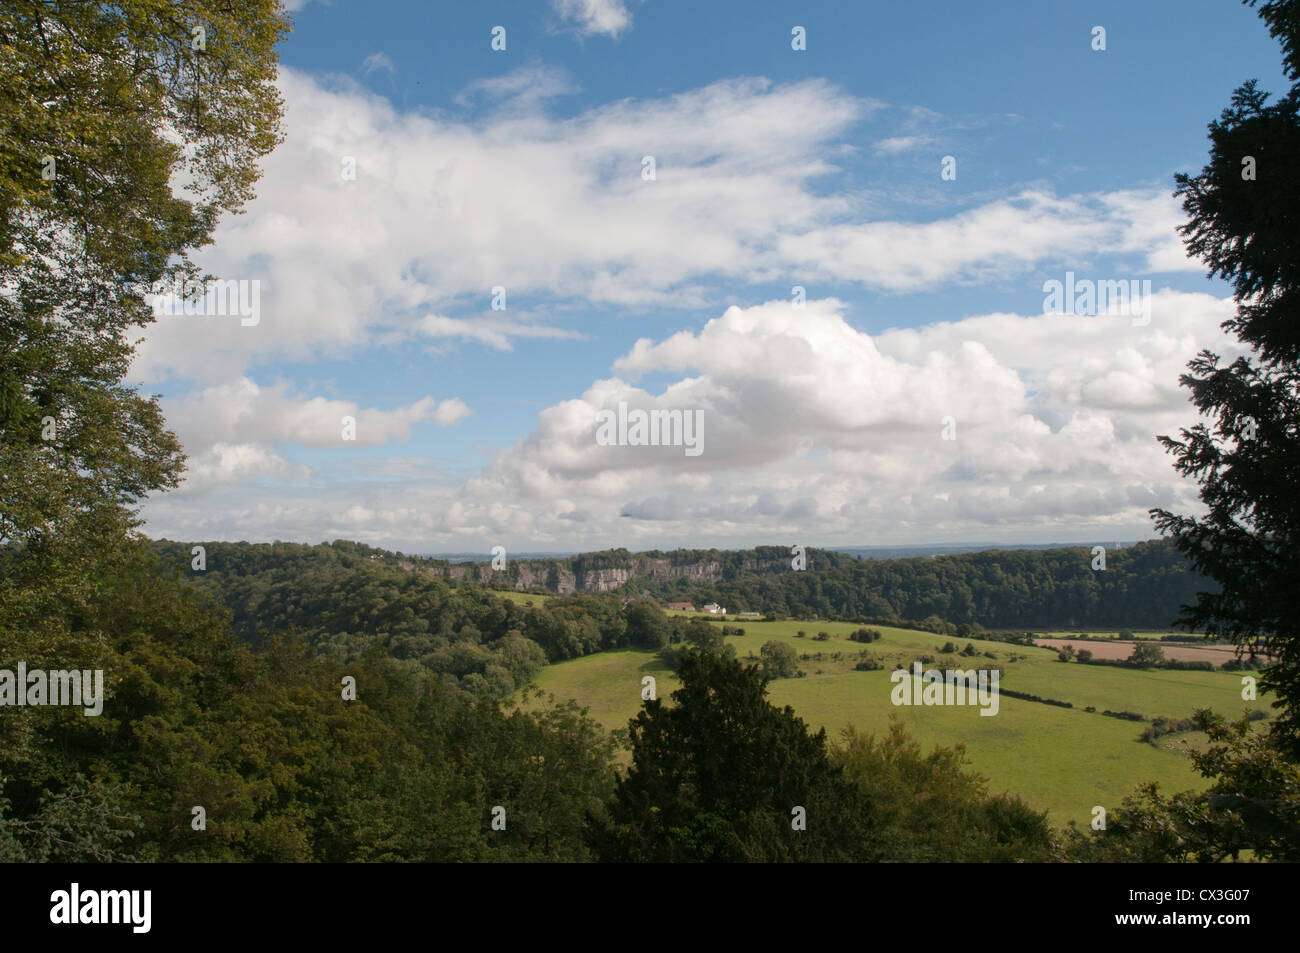 Los paisajes rurales, campos, bosques, distante cantera, cielo azul, nubes blancas, enmarcadas con árboles cercanos Foto de stock